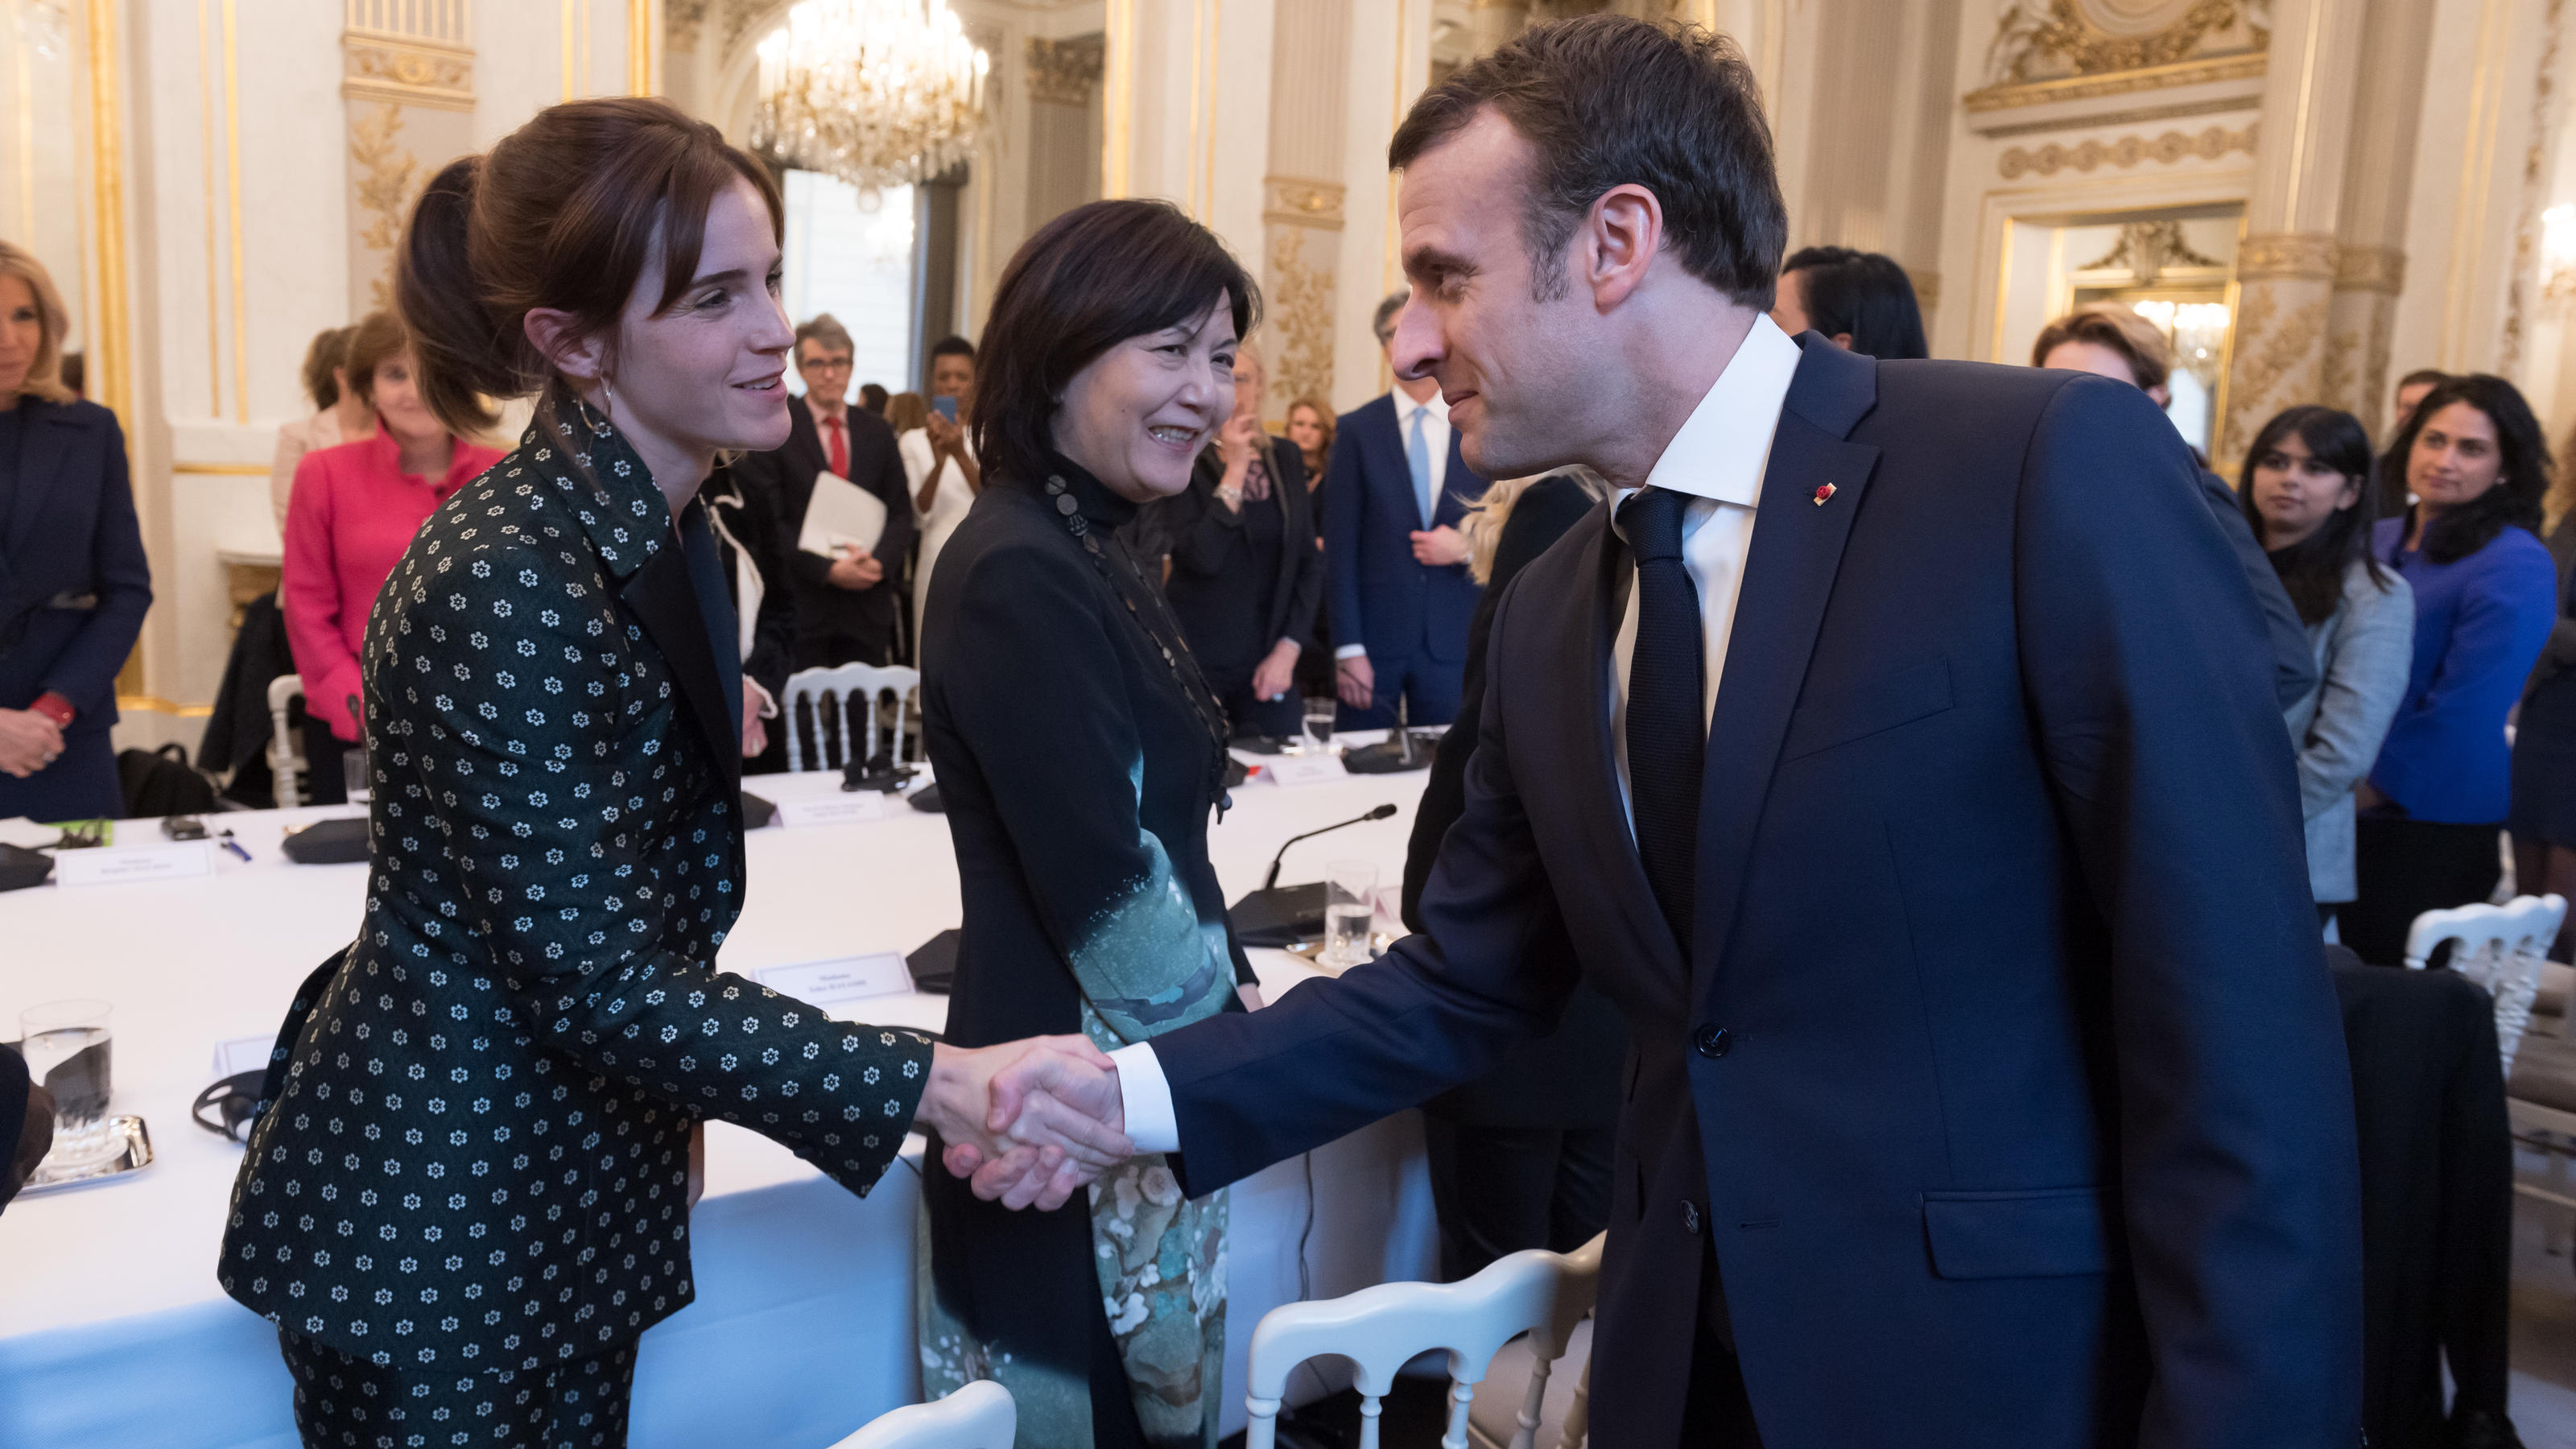 Politisch aktiv: Bei dem "G7 Equality Meeting" traf Emma Watson im Mai auf Emmanuel Macron.